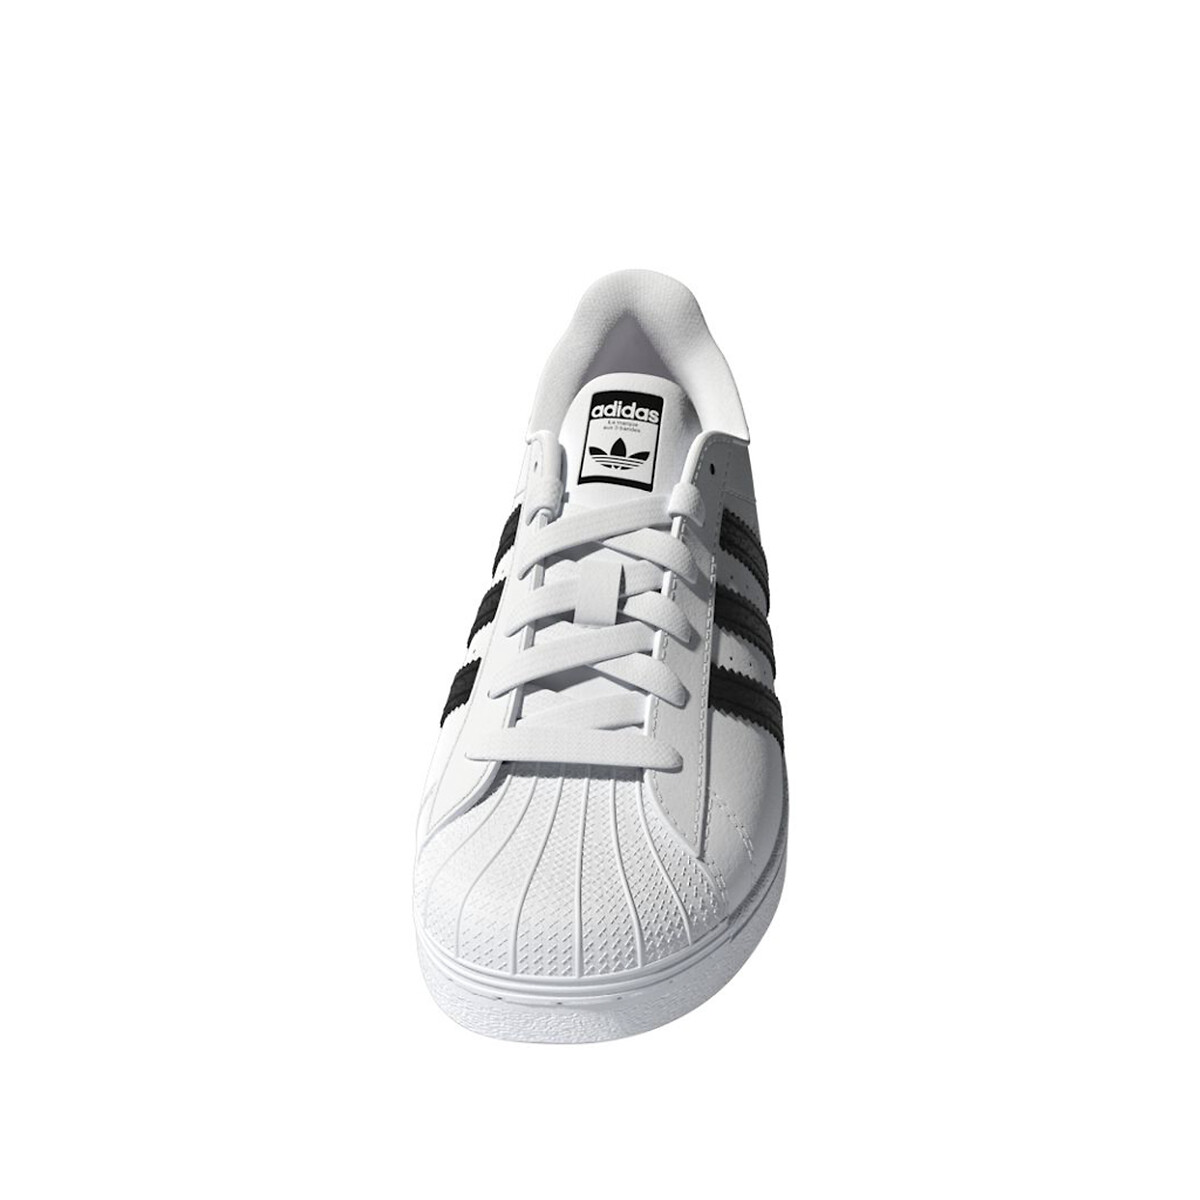 George Bernard natuurlijk kiem Sneakers met veters superstar wit Adidas Originals | La Redoute